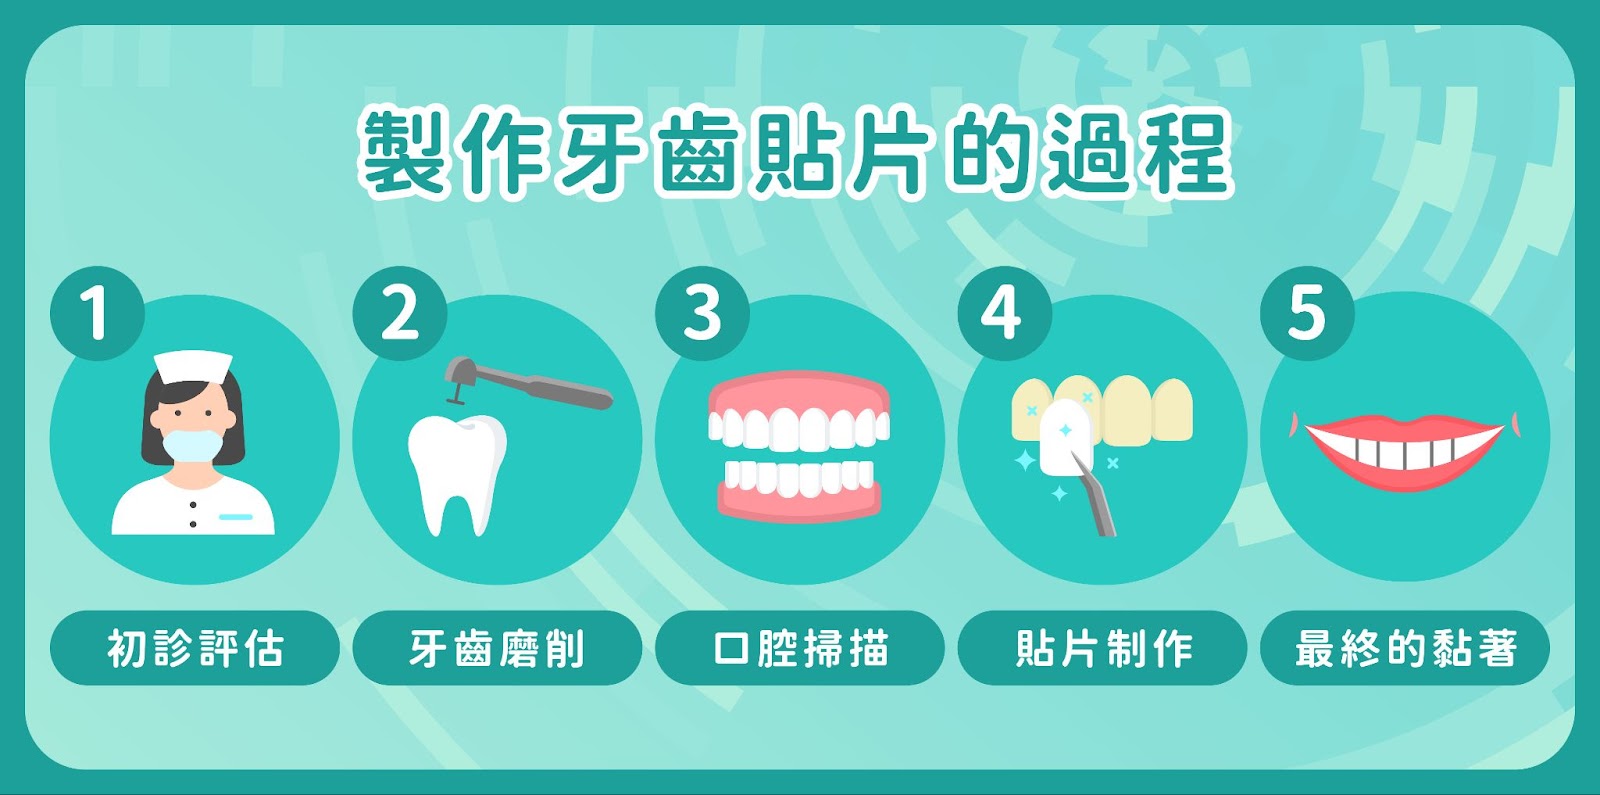 製作牙齒貼片的過程是怎樣的？  安裝過程通常包括初診評估、牙齒磨削、取模、貼片制作和最終的粘貼過程。整個過程可能需要幾周時間，以確保貼片的質量和與原有牙齒的完美匹配。